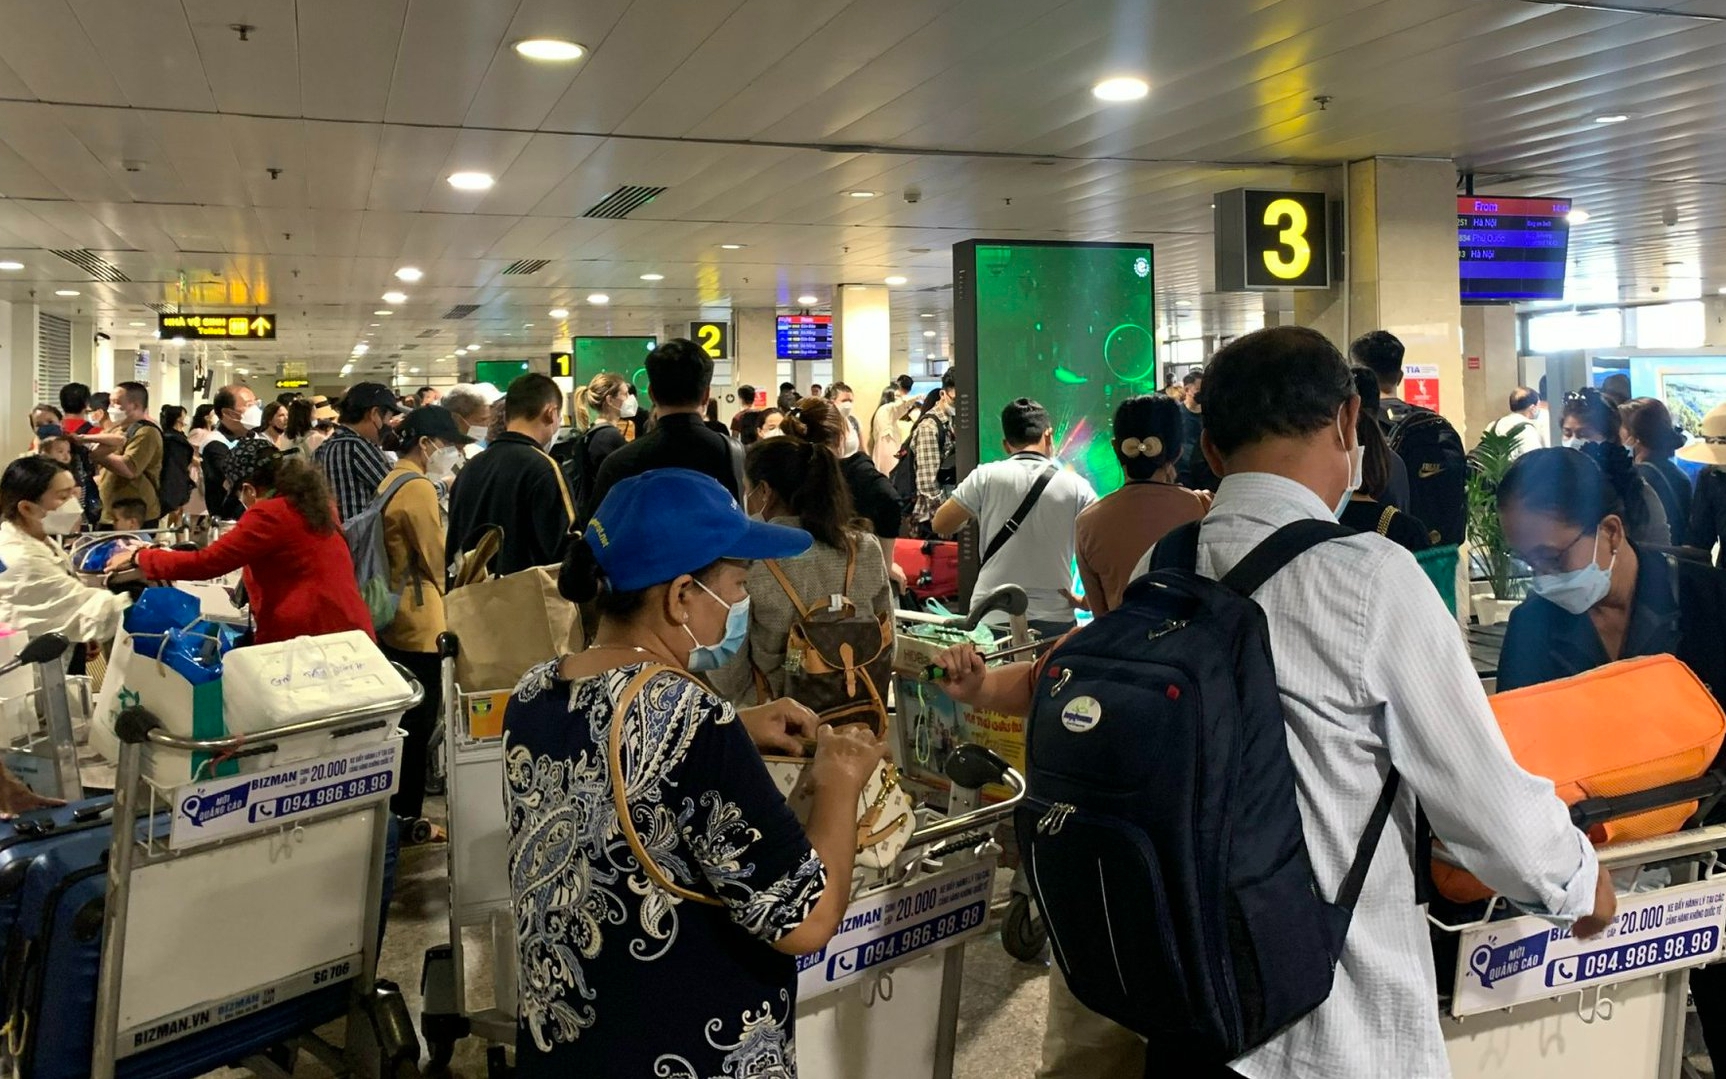 Sân bay Tân Sơn Nhất - một trong những sân bay lớn nhất tại Việt Nam. Thế giới bận rộn, hối hả với những chuyến bay đến và đi, cùng xem hình ảnh về sân bay này để thấy được phần nào về sự tiện nghi và hiện đại của nơi này.